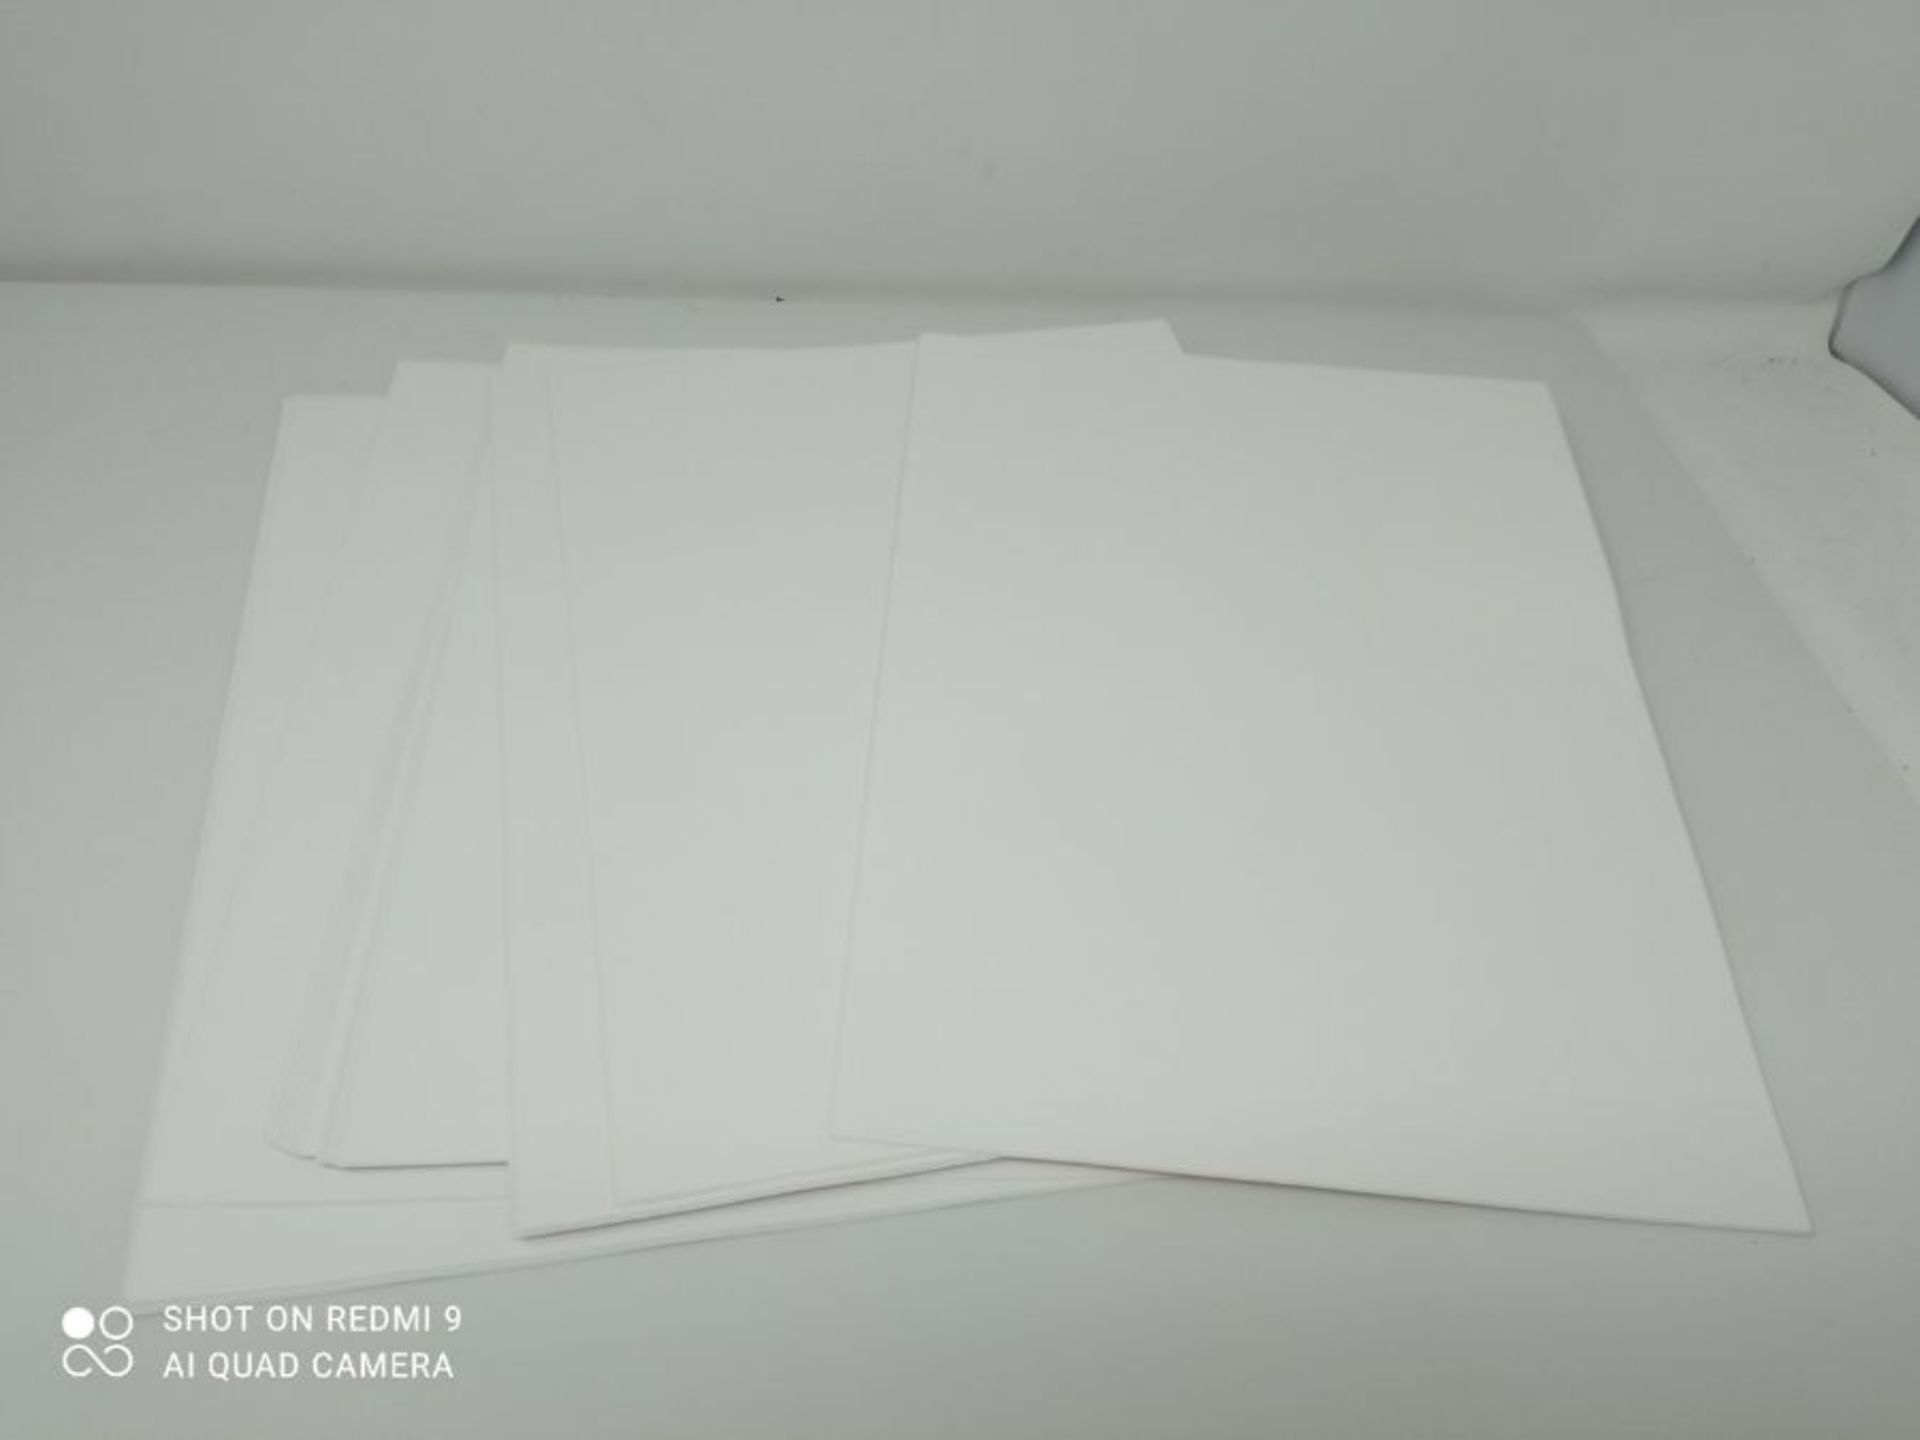 HERMA 9543 Wetterfeste Folien-Etiketten DIN A4 (210 x 297 mm, 40 Blatt, Polyethylen, m - Image 2 of 2